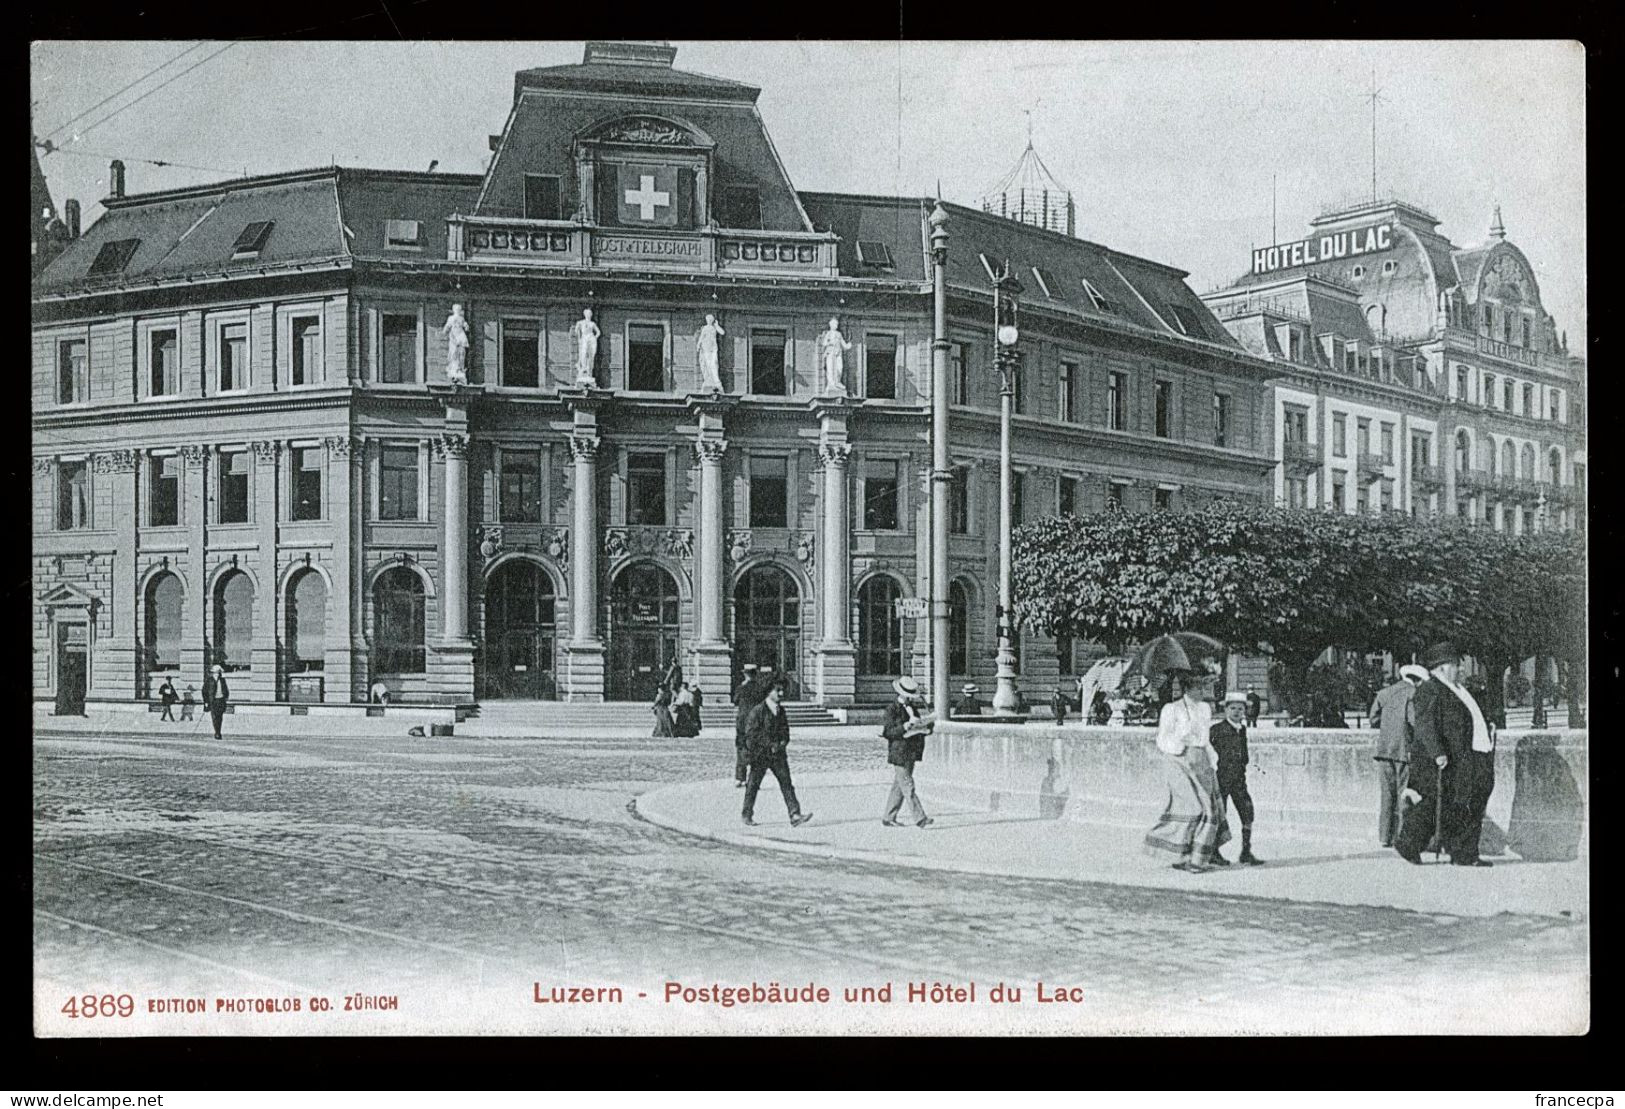 14770 - SUISSE - LUZERN - Postgebäude Und Hôtel Du Lac  - DOS NON DIVISE - Lucerne